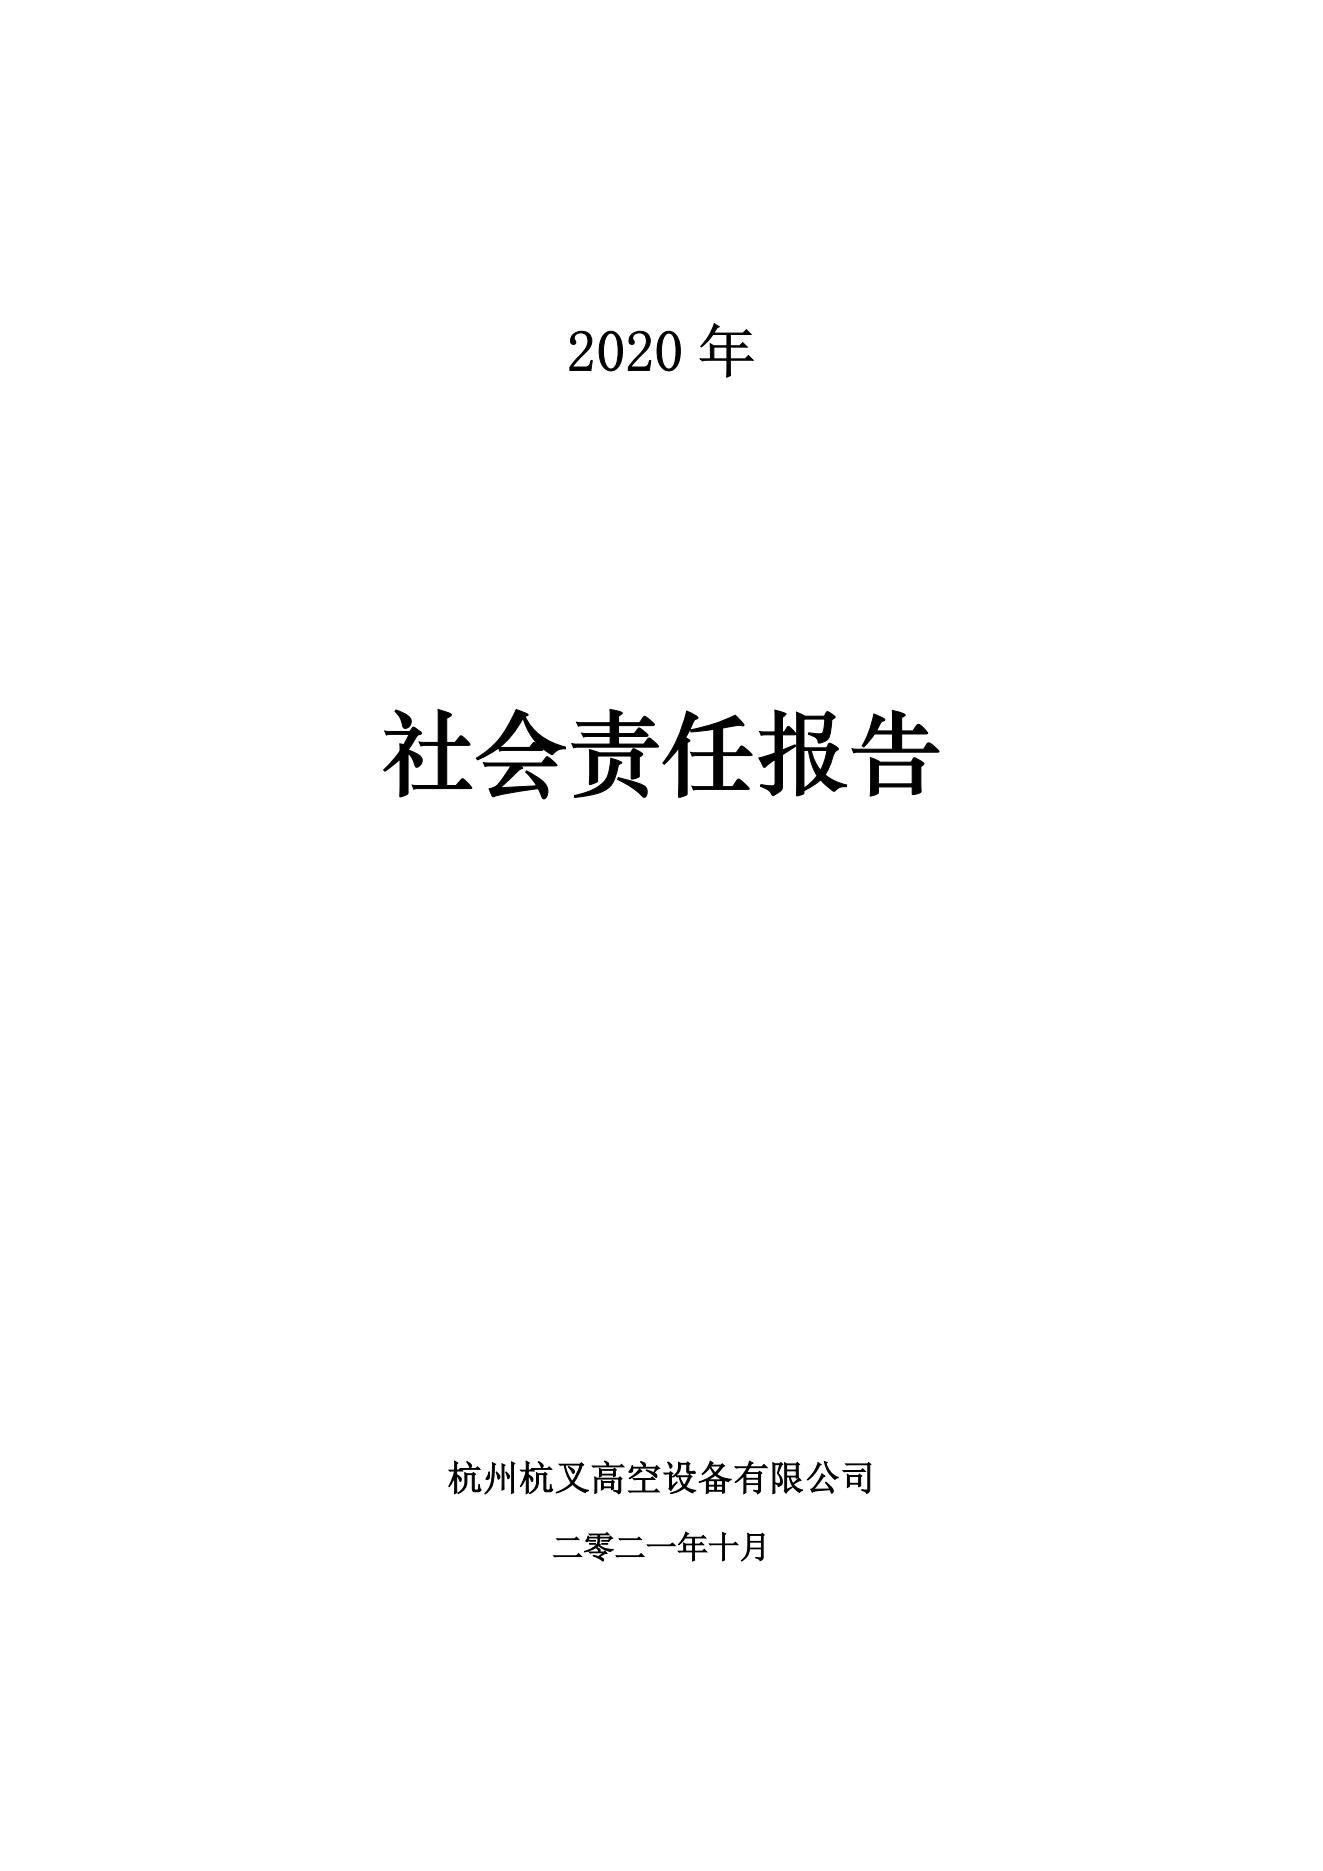 2020年社會責任報告(圖1)